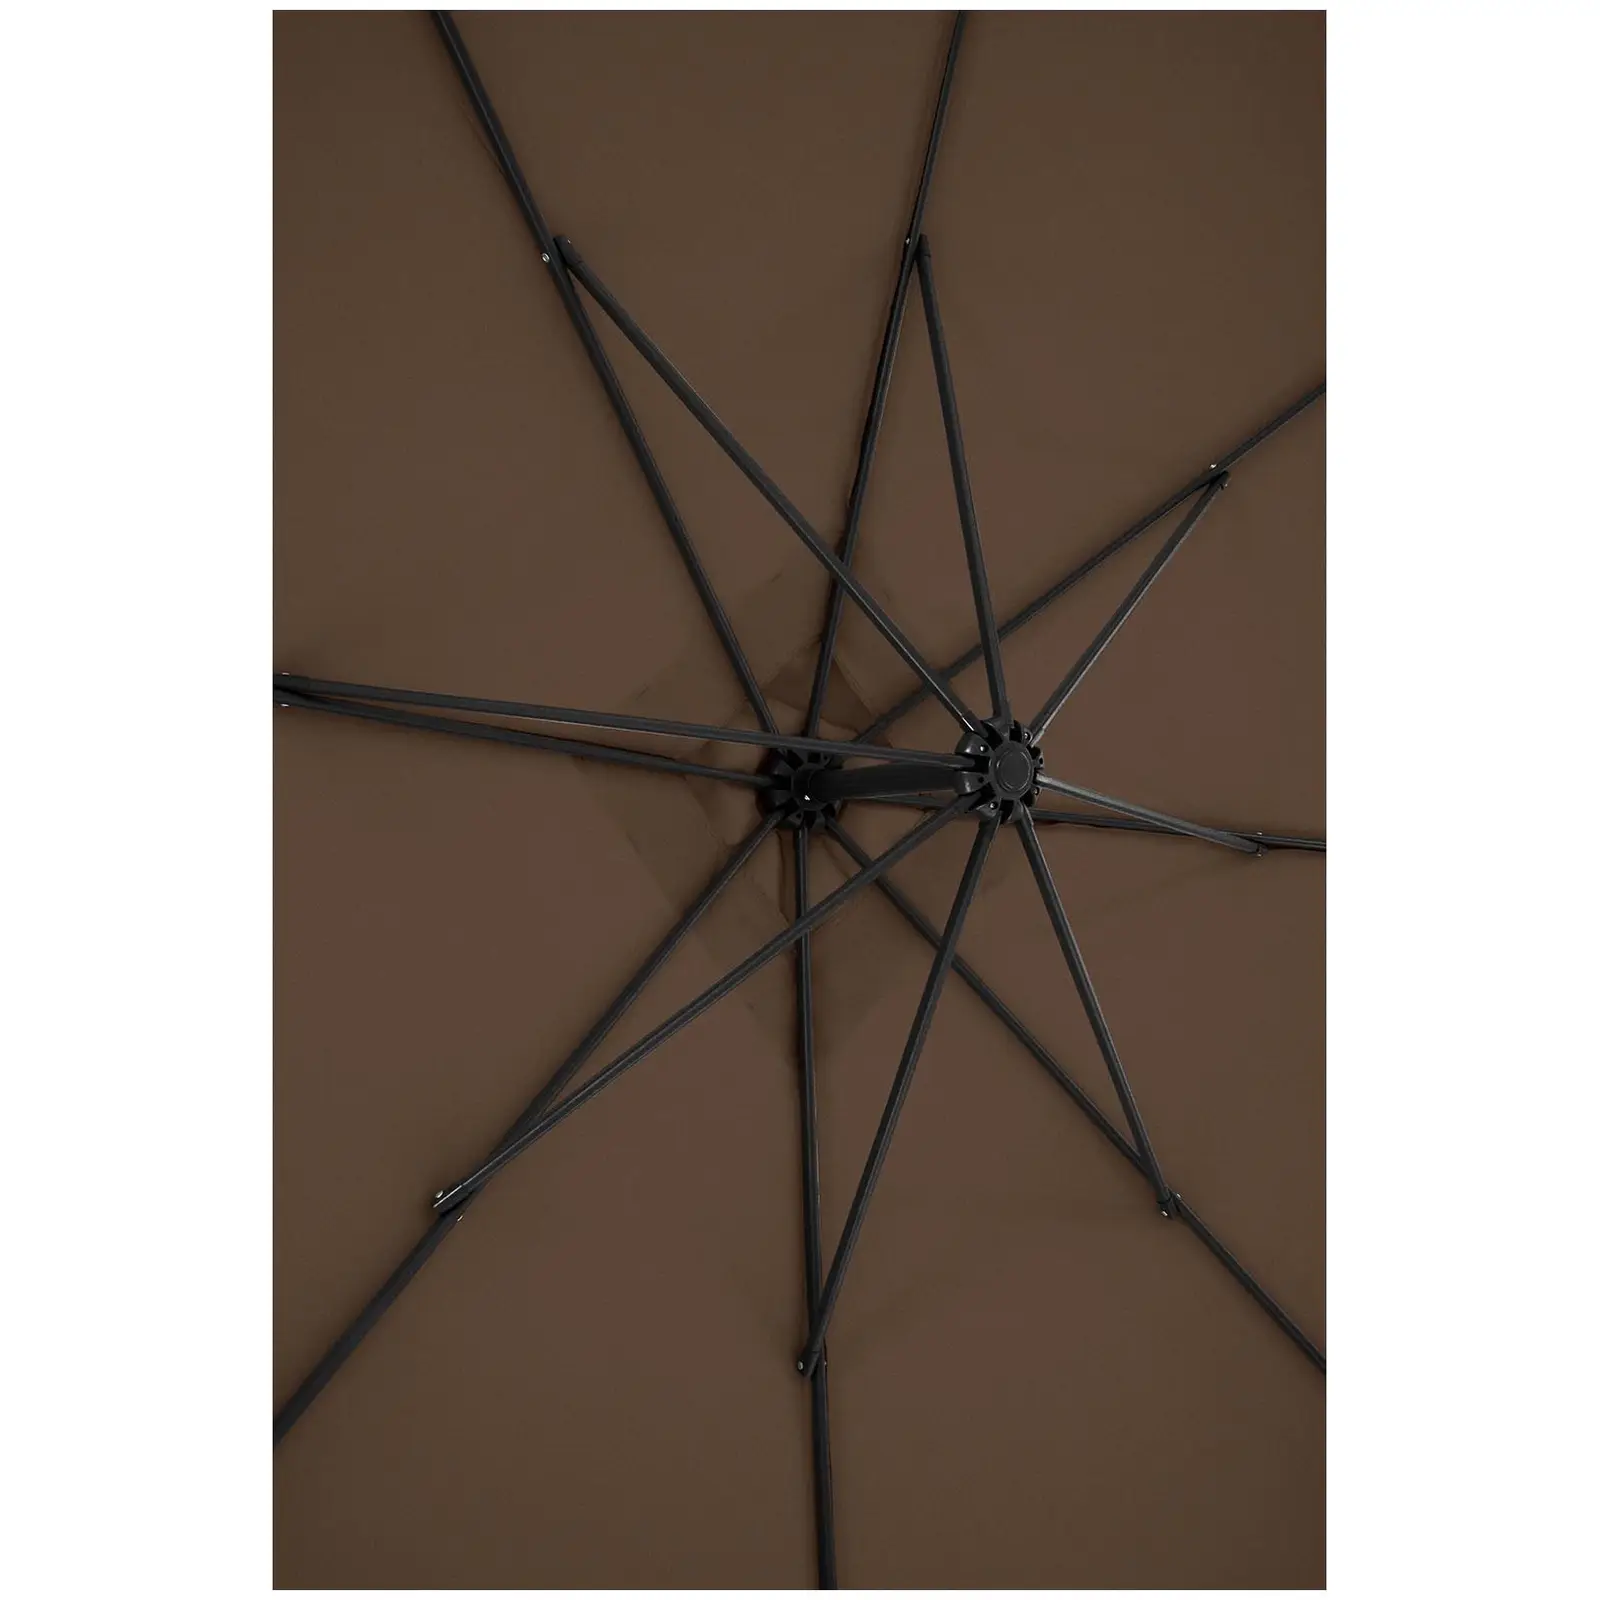 Trädgårdsparasoll - brunt - fyrkantigt - 250 x 250 cm - kan lutas